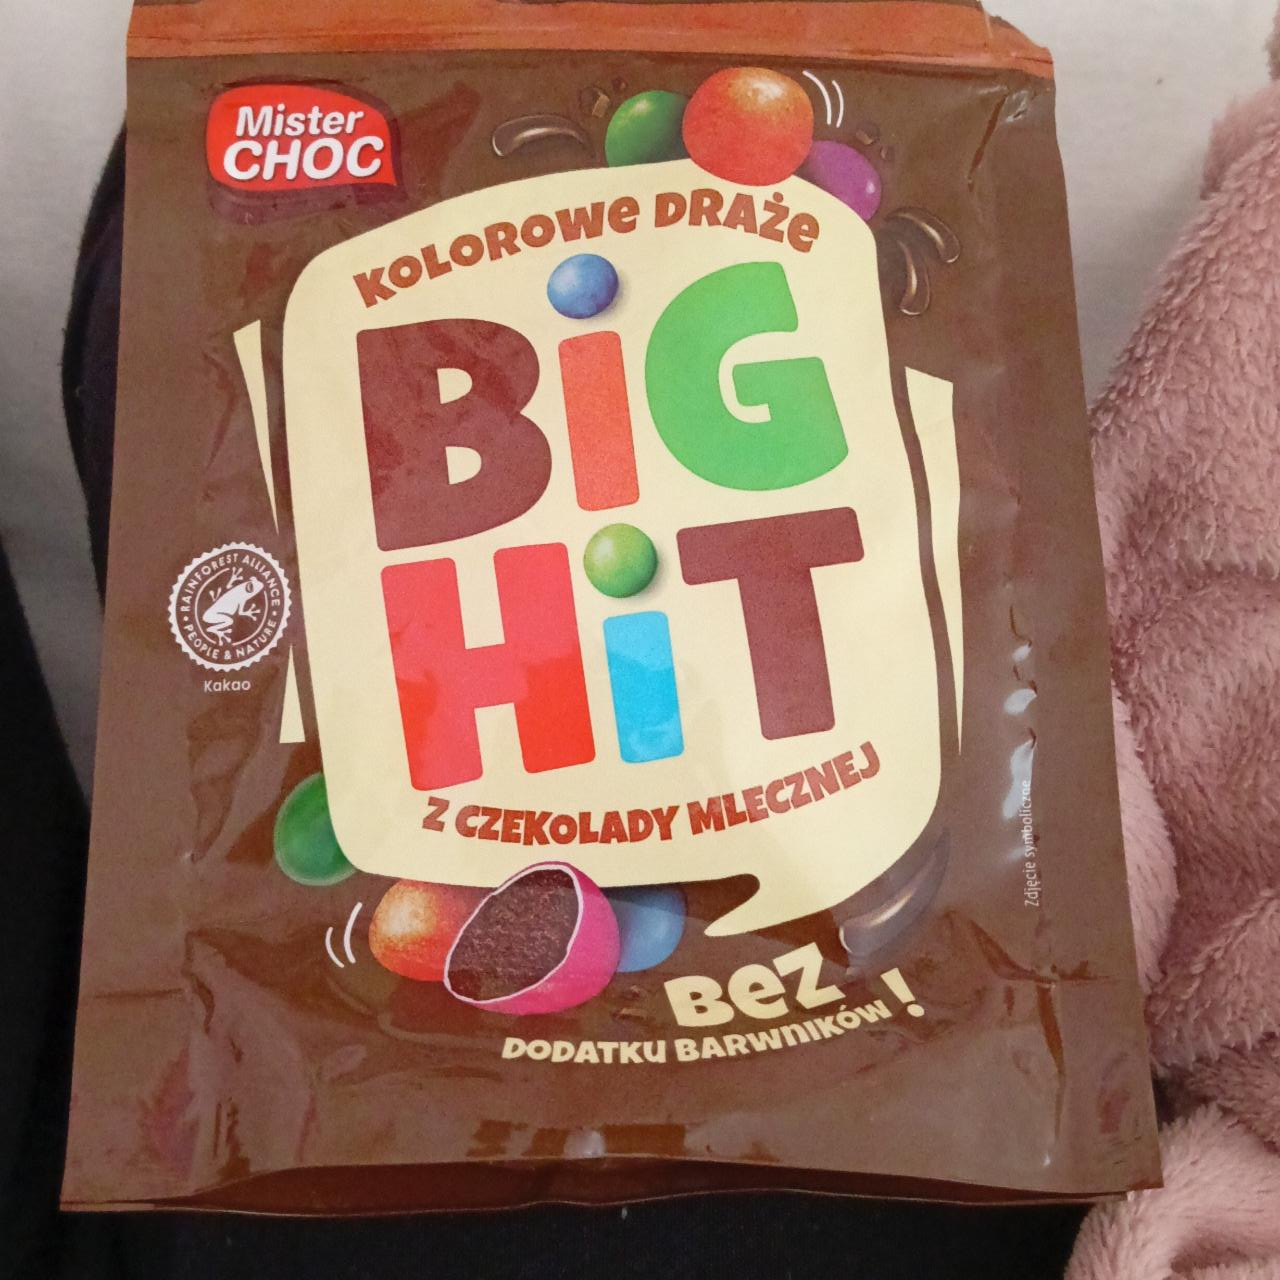 Zdjęcia - Kolorowe draże z czekolady mlecznej big hit Mister Choc